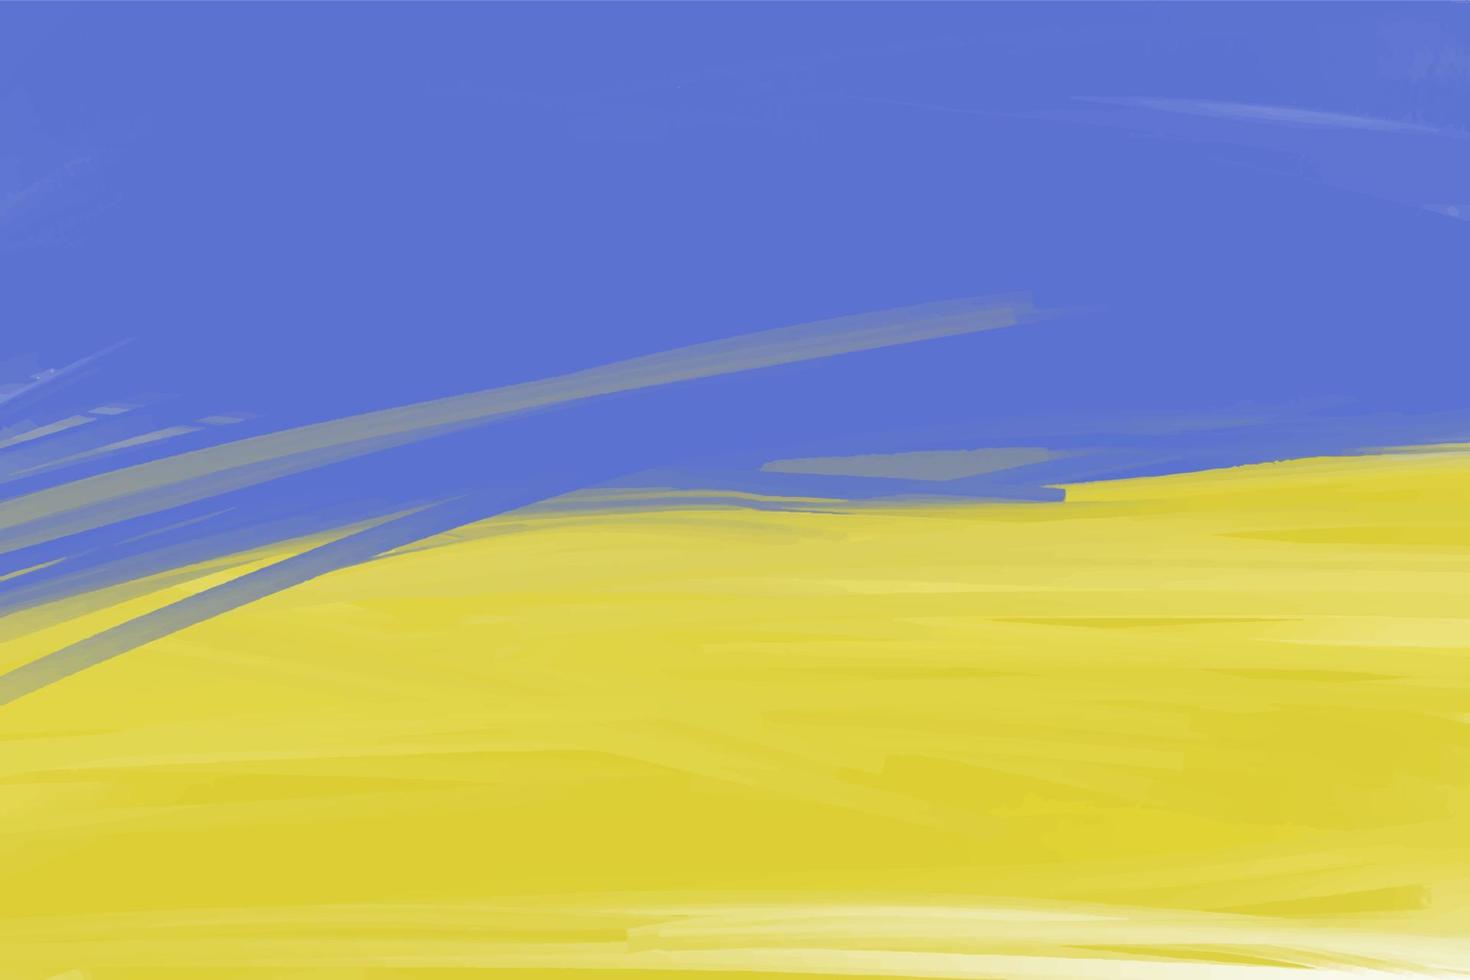 das Hintergrund ist Hand gezeichnet mit Schlaganfälle von Blau und Gelb Farben, das ukrainisch Flagge vektor